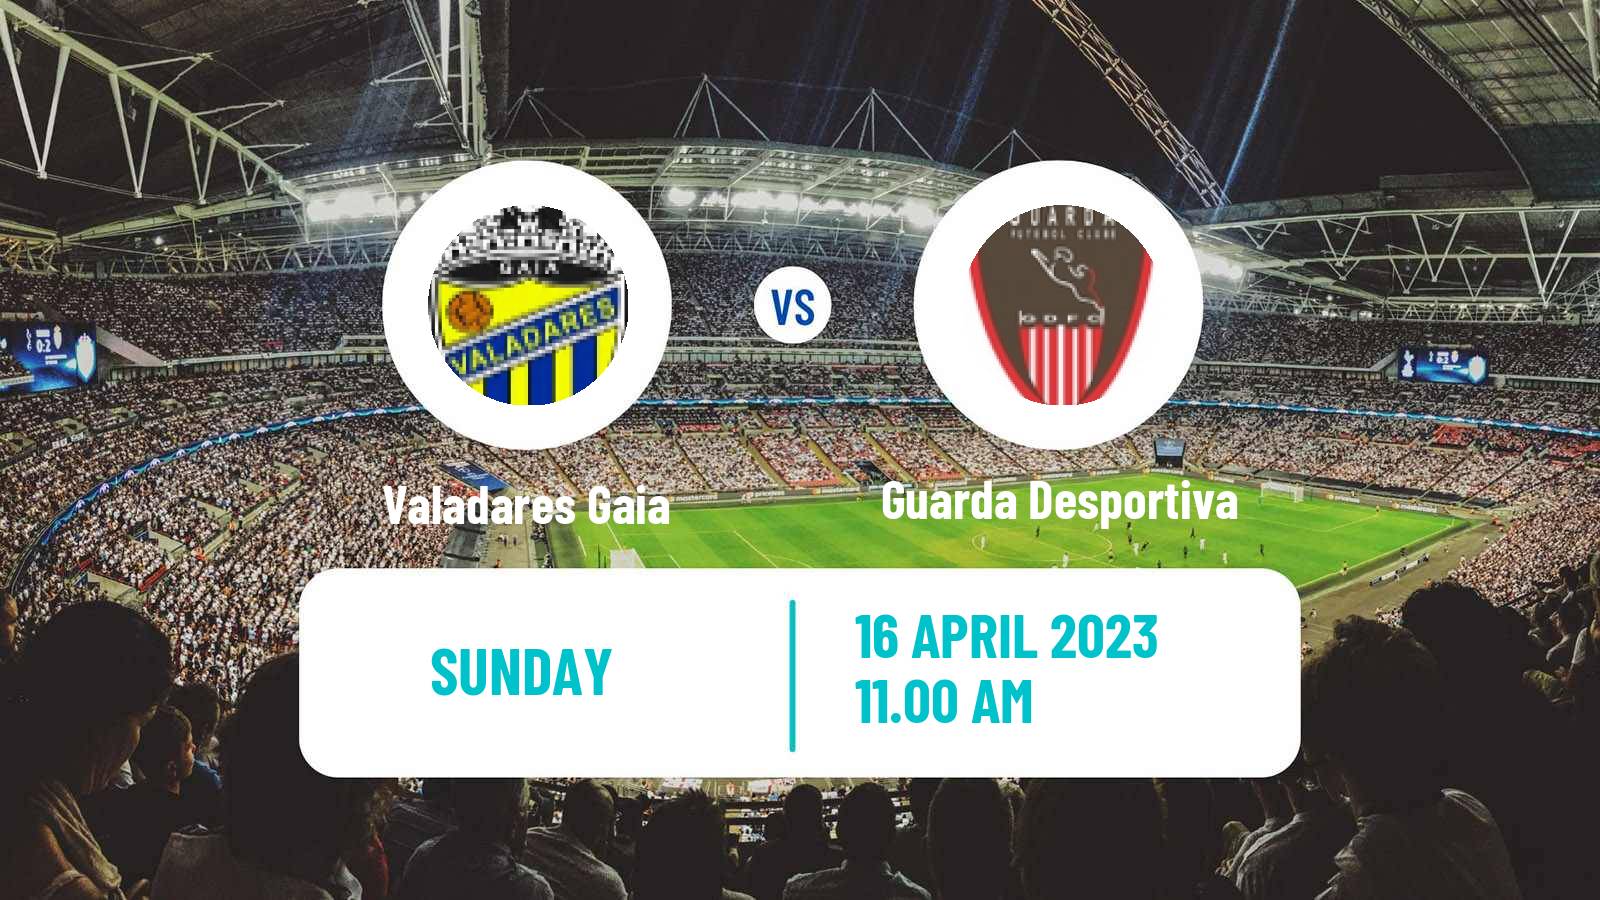 Soccer Campeonato de Portugal Valadares Gaia - Guarda Desportiva